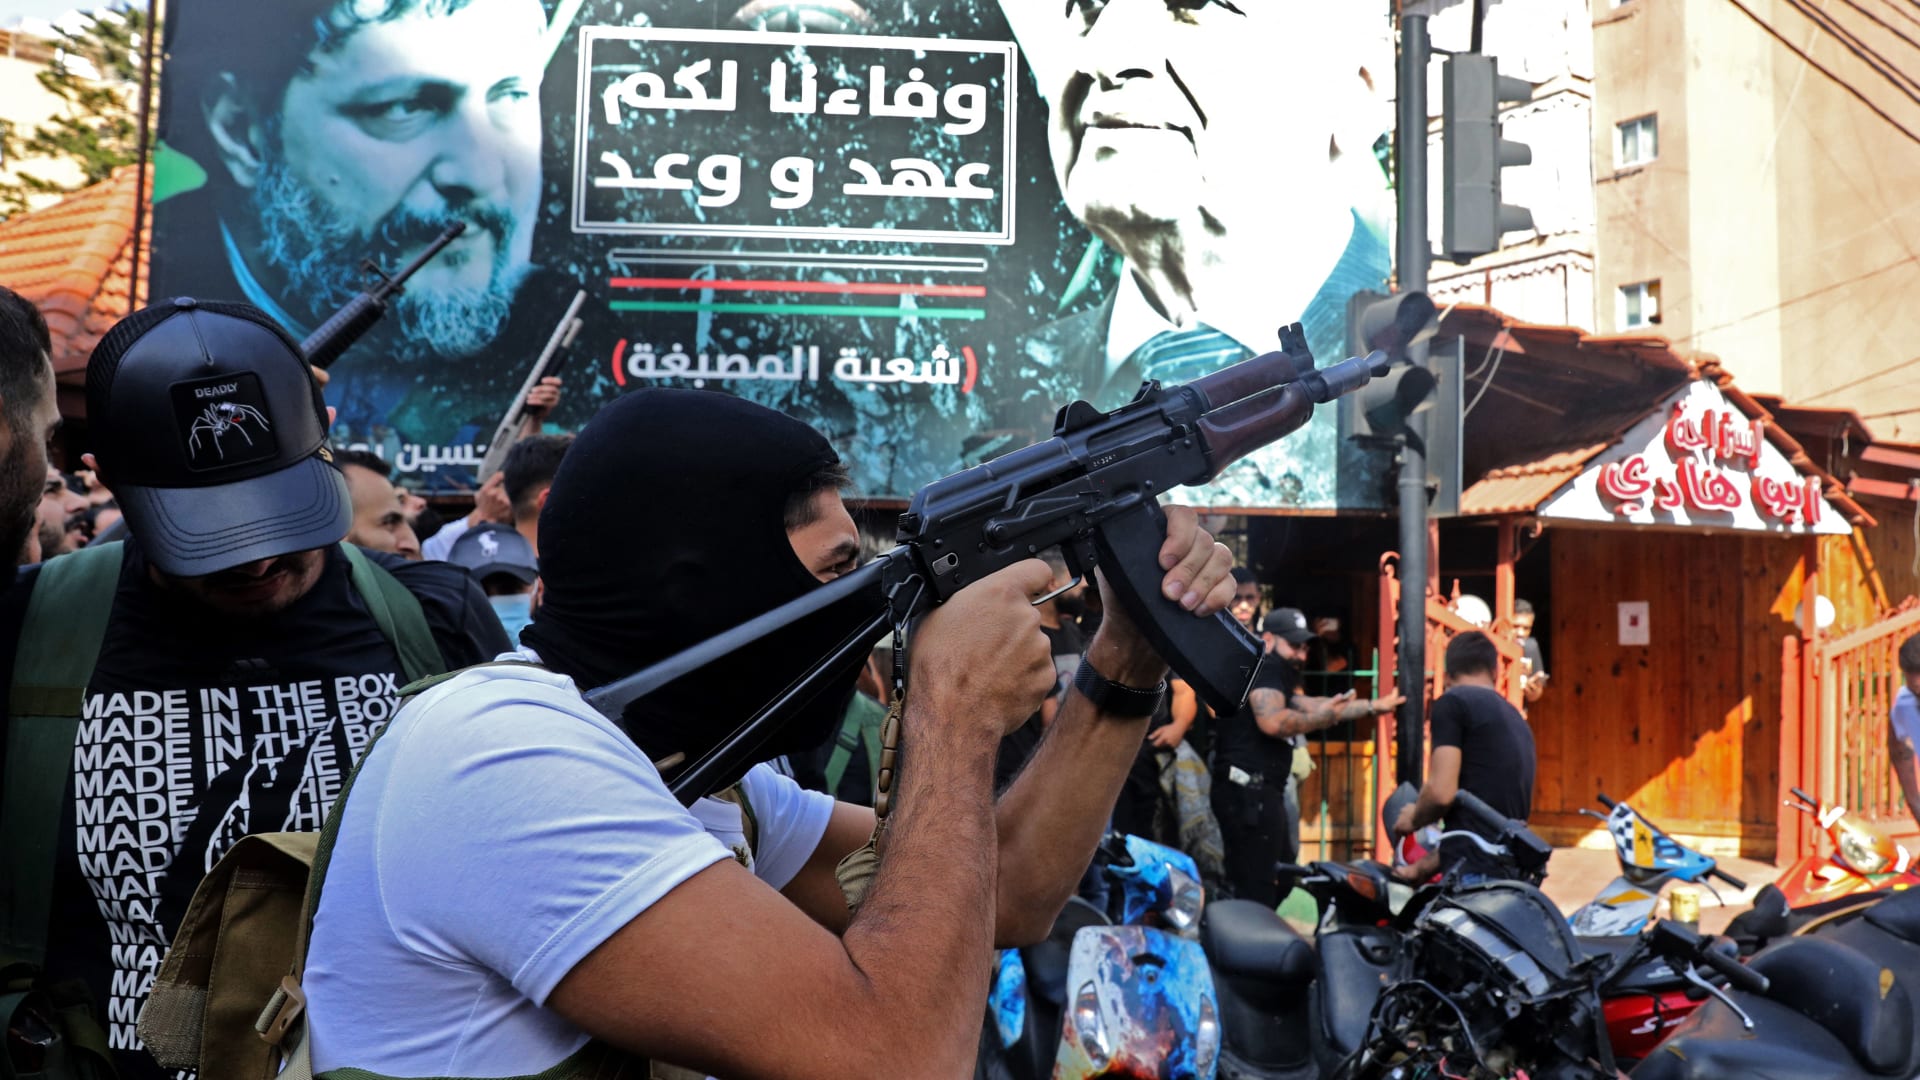 مراسل CNN على ضفتي الخط الفاصل القديم لحرب لبنان الأهلية.. ما الذي تحمله موجة العنف الأخيرة؟